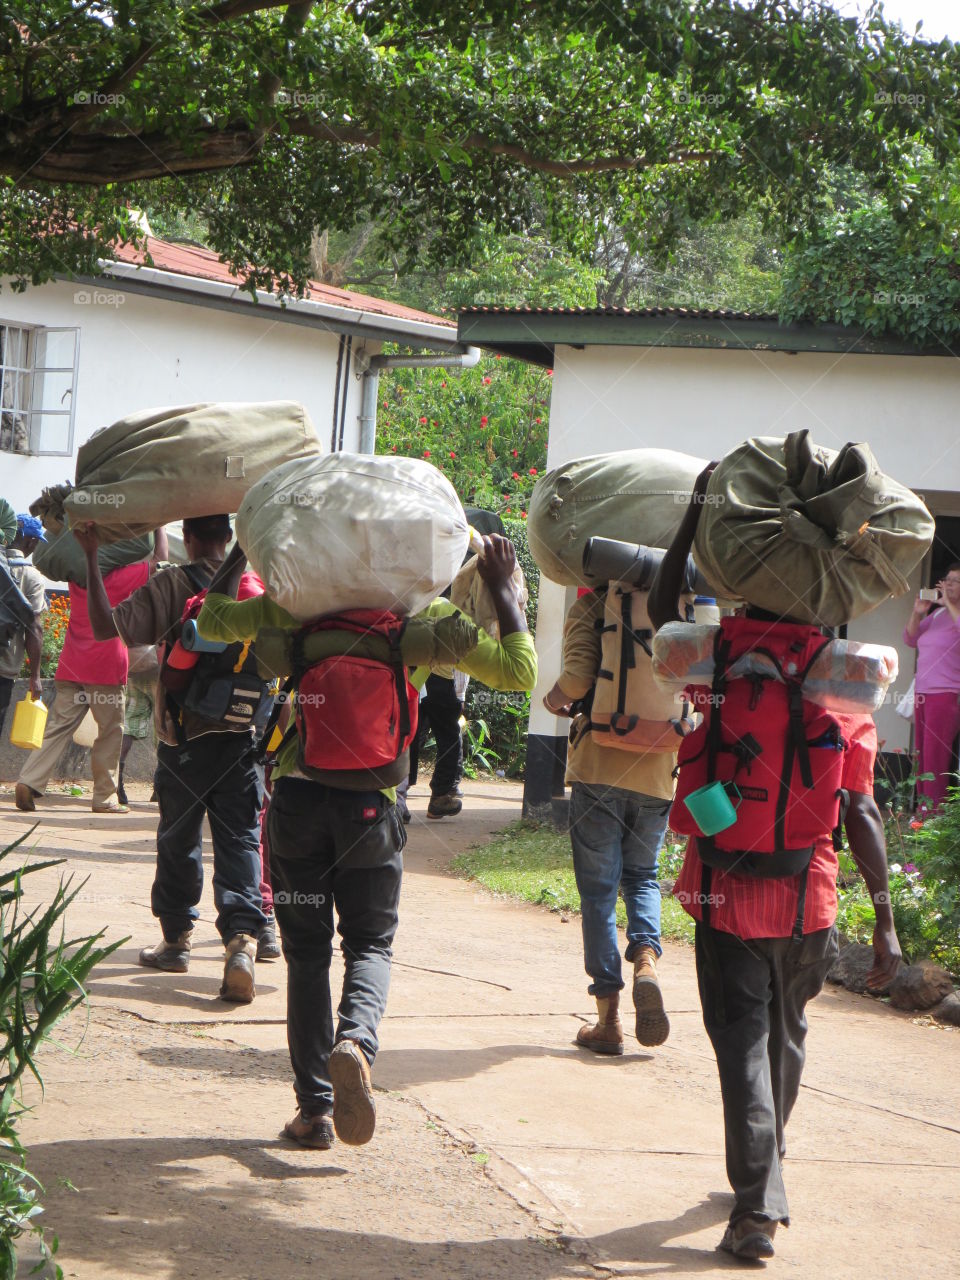 Porters preparing for the trek up Kilimanjaro